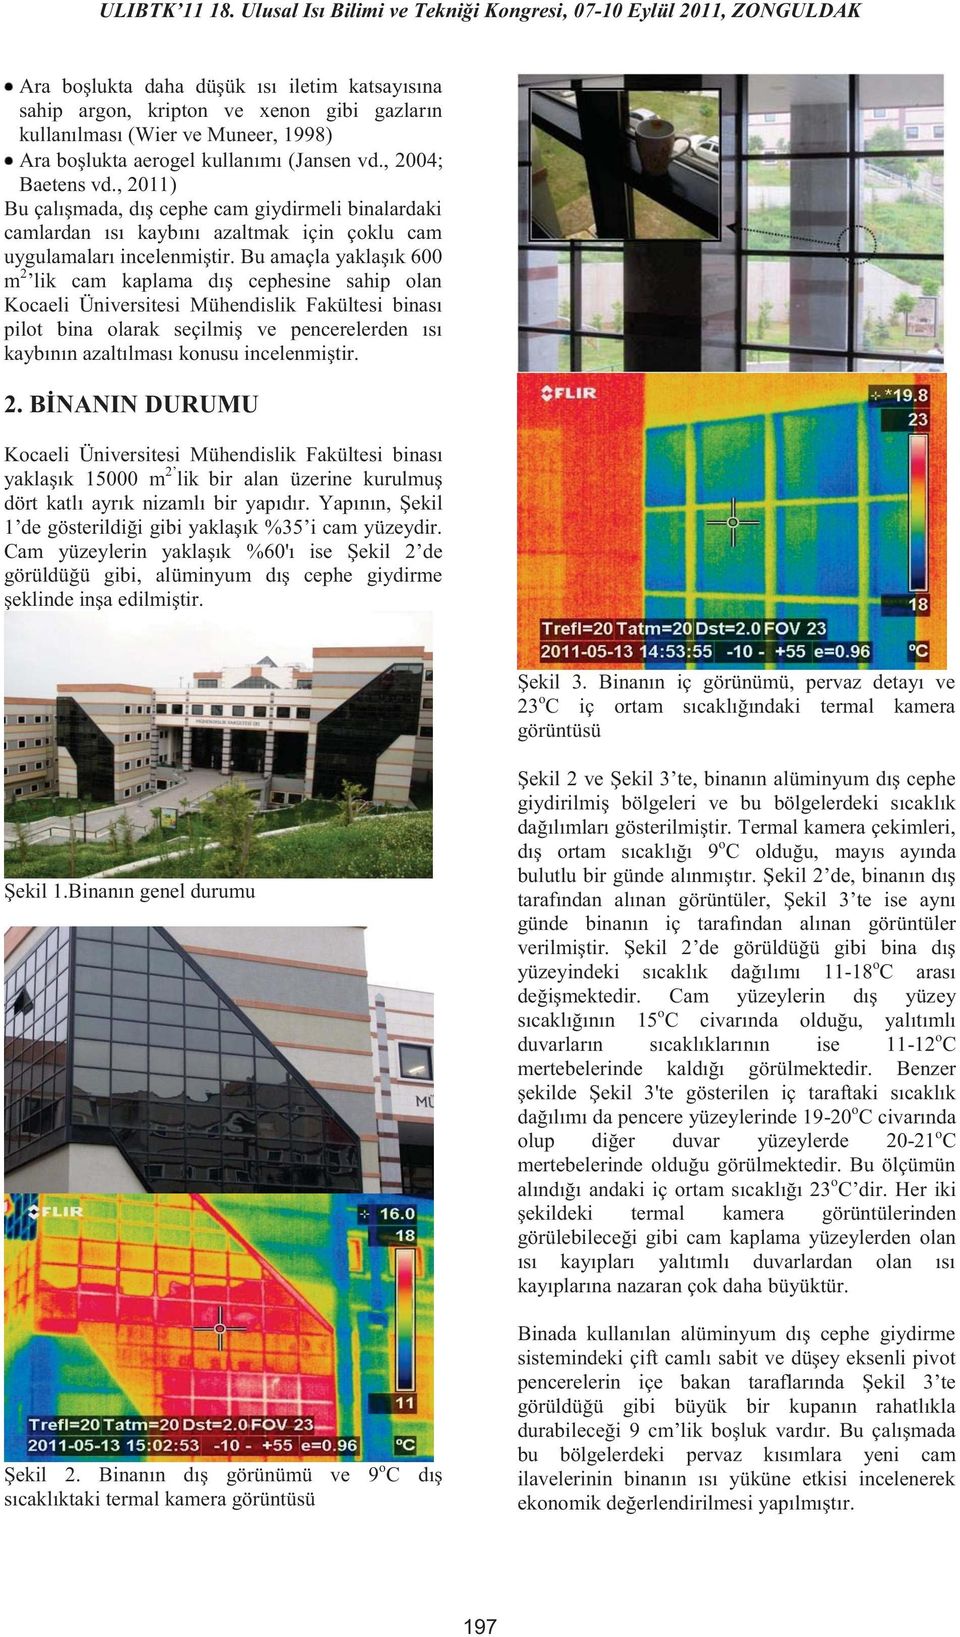 Bu amaçla yaklaşık 600 m 2 lik cam kaplama dış cephesine sahip olan Kocaeli Üniversitesi Mühendislik Fakültesi binası pilot bina olarak seçilmiş ve pencerelerden ısı kaybının azaltılması konusu